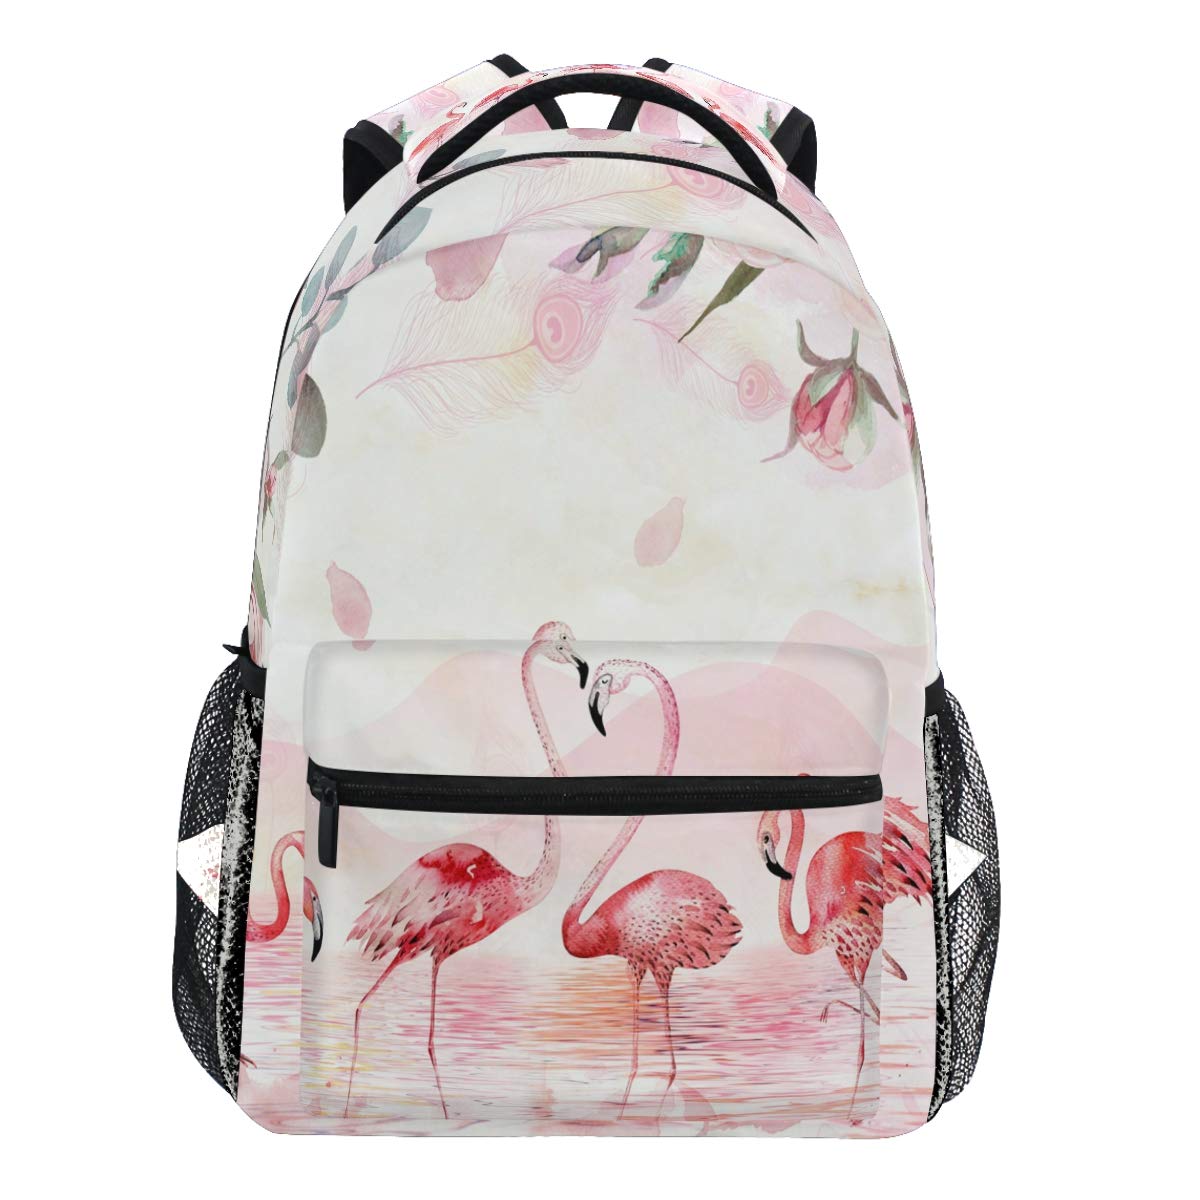 Oarencol Pink Flamingo Lake Rose Landscape Rucksack Bookbag Daypack Reise Schule College Tasche für Damen Herren Mädchen Jungen